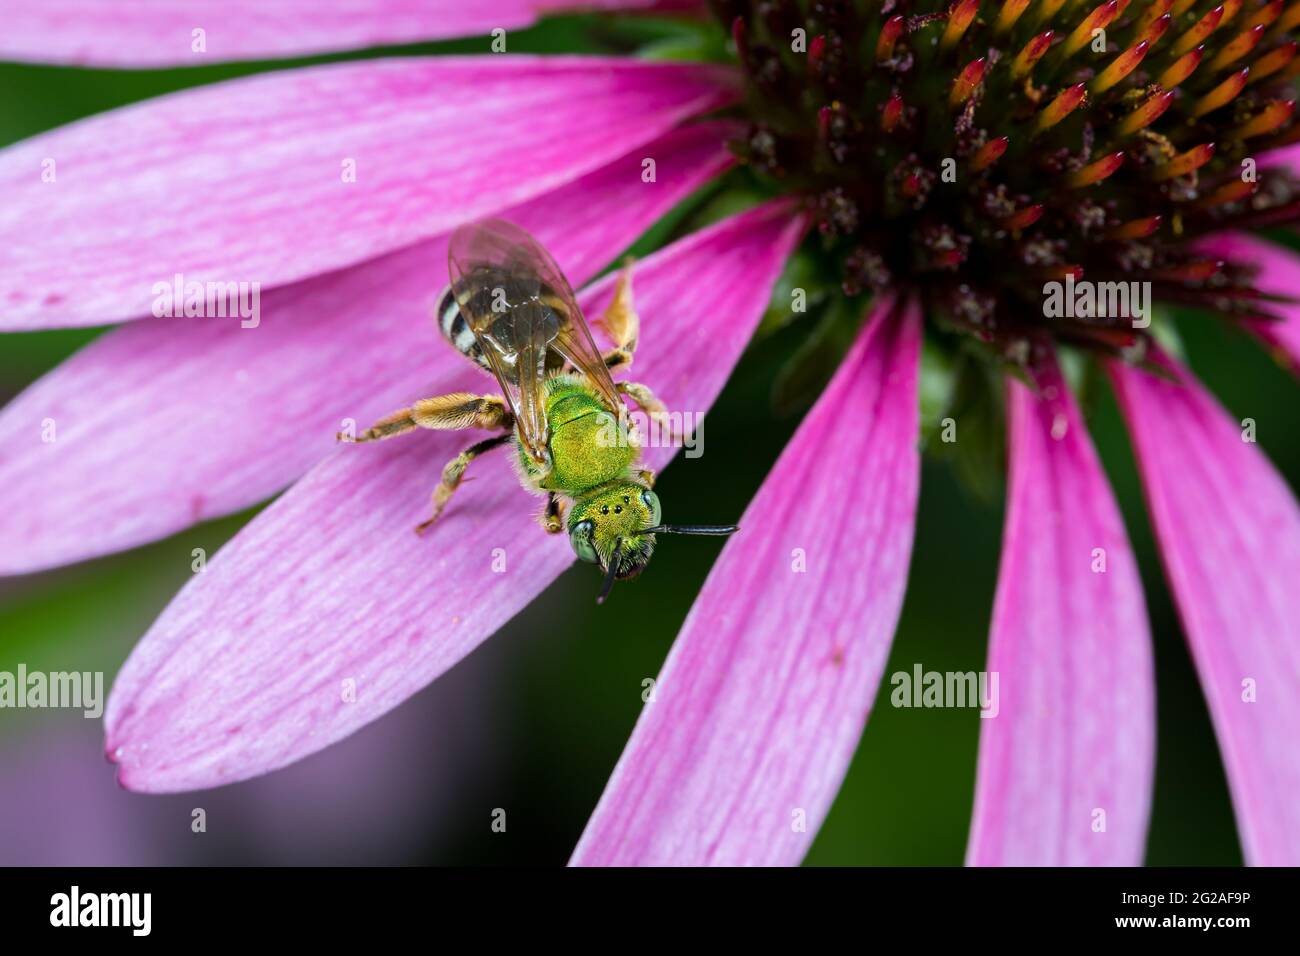 Nahaufnahme der grünen weiblichen Schweißbiene auf der purpurnen Kegelblume. Konzept des Insekten- und Wildtierschutzes, der Erhaltung von Lebensräumen und des Gartenblumengartens Stockfoto